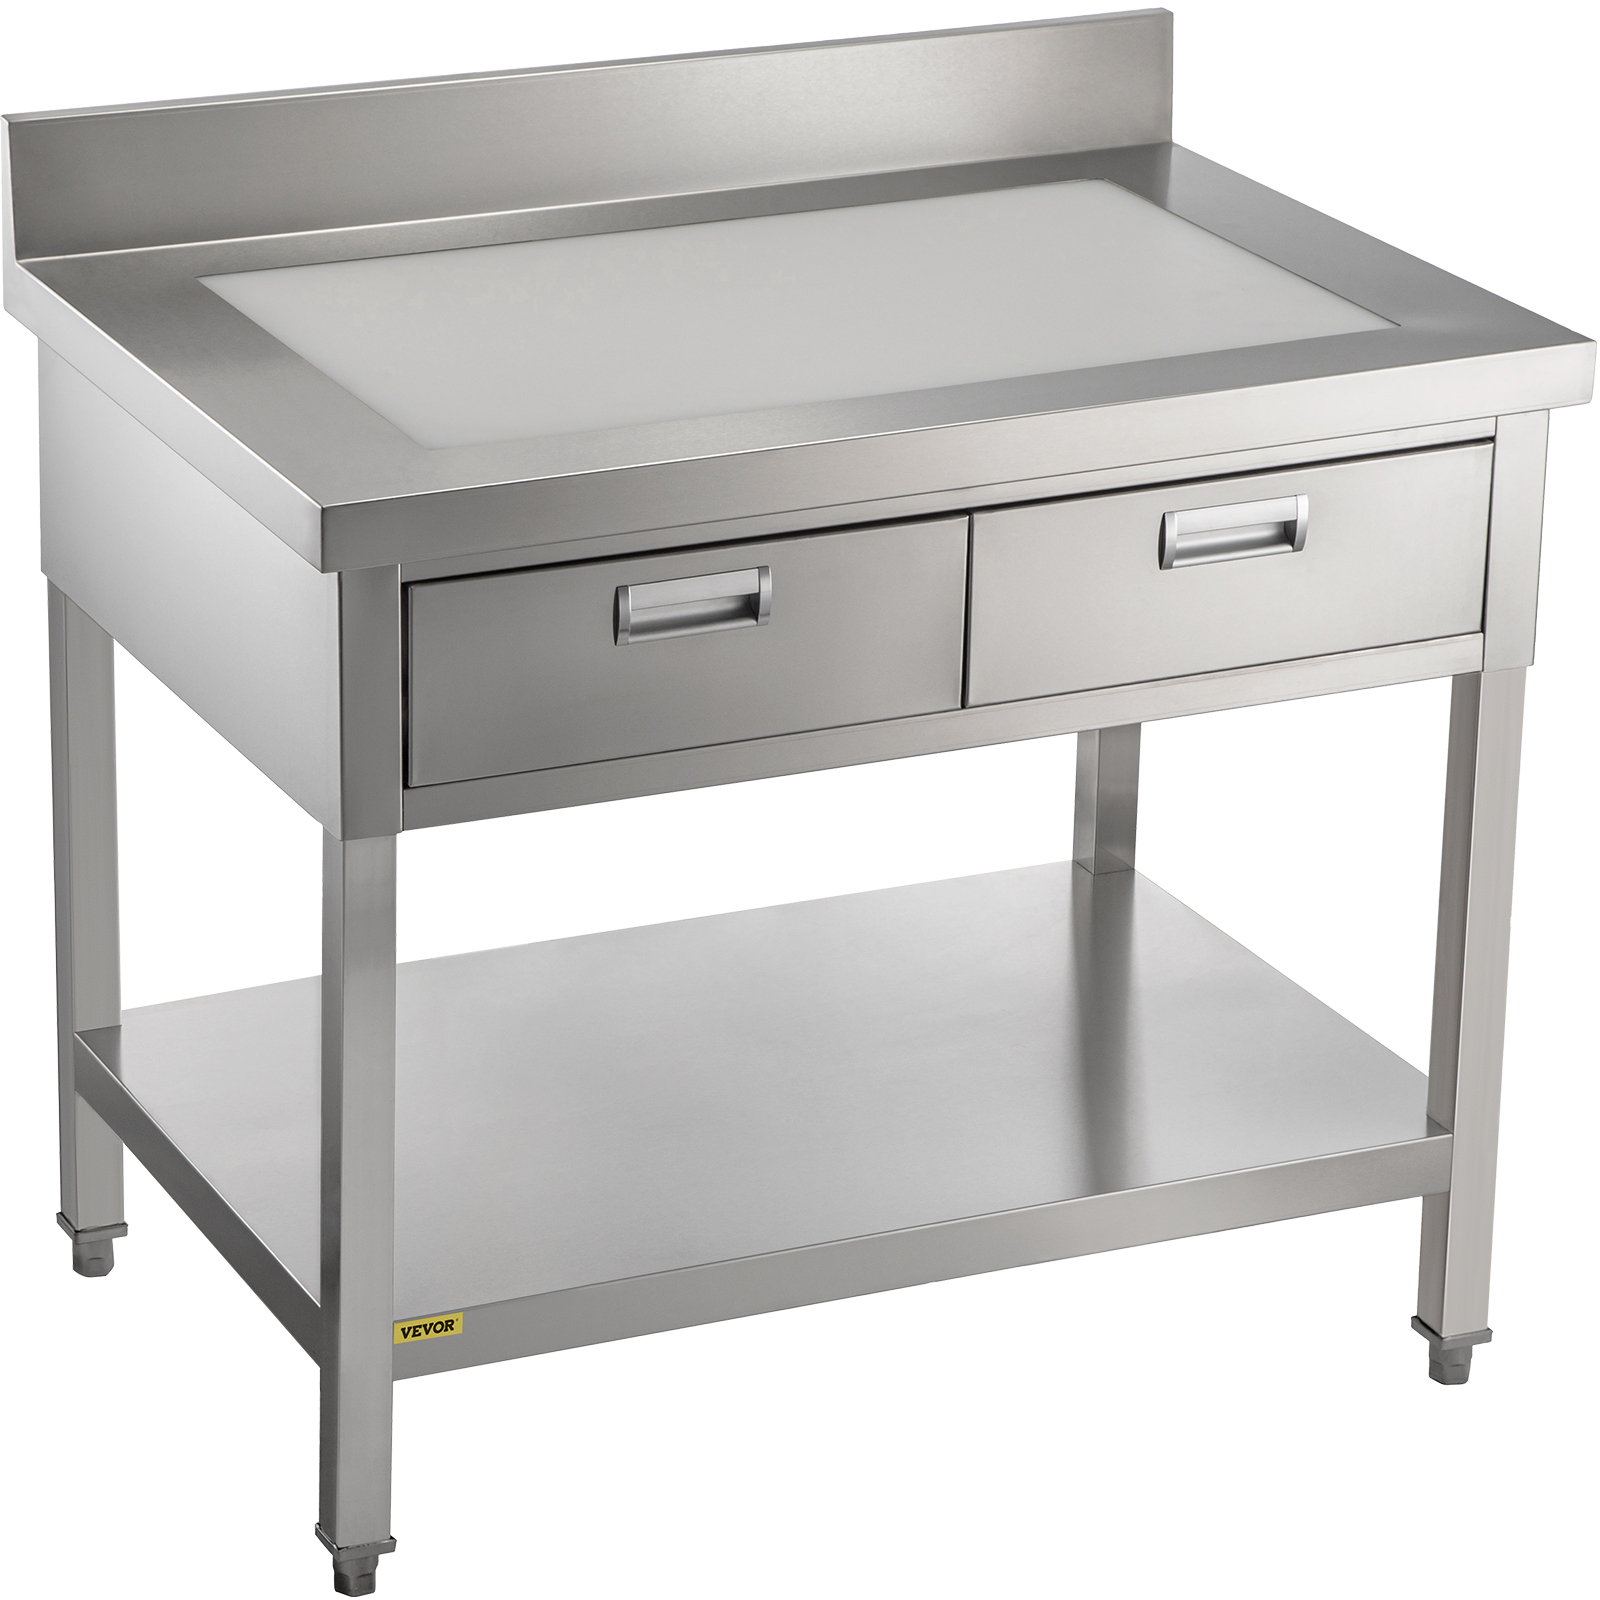 Mesa para cocina Central de acero inox 60 x 50